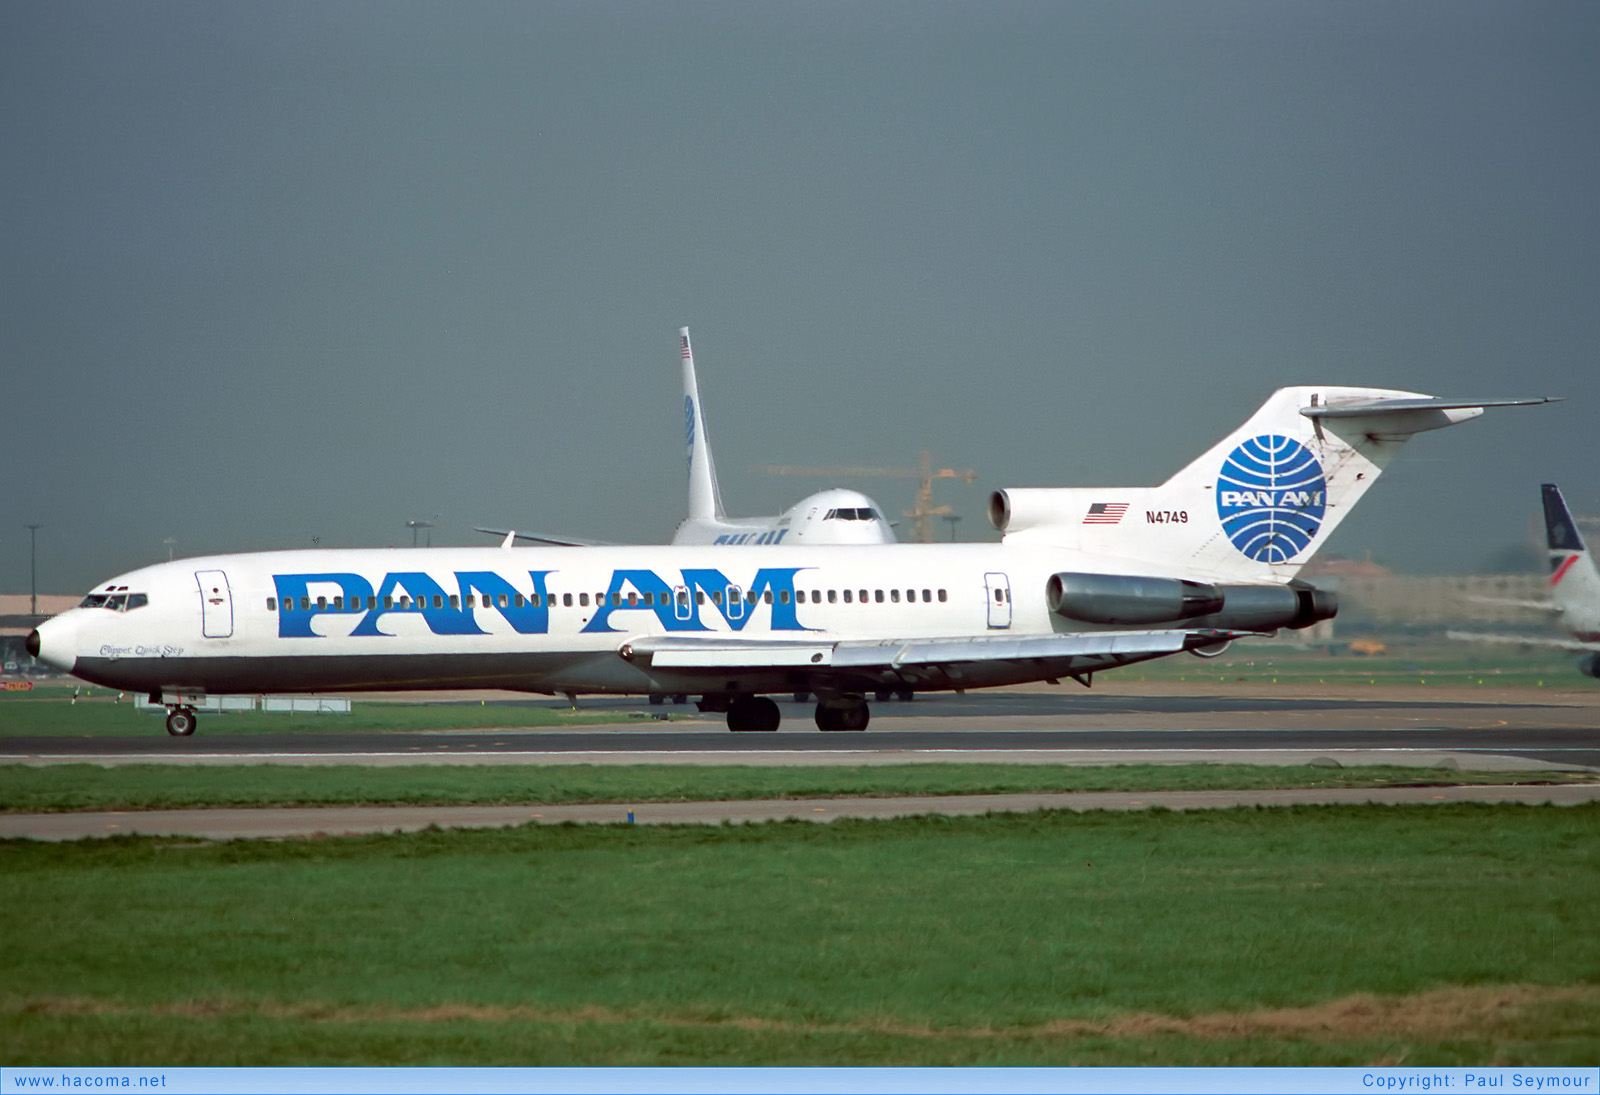 Foto von N4749 - Pan Am Clipper Quickstep - London Heathrow Airport - 17.03.1990